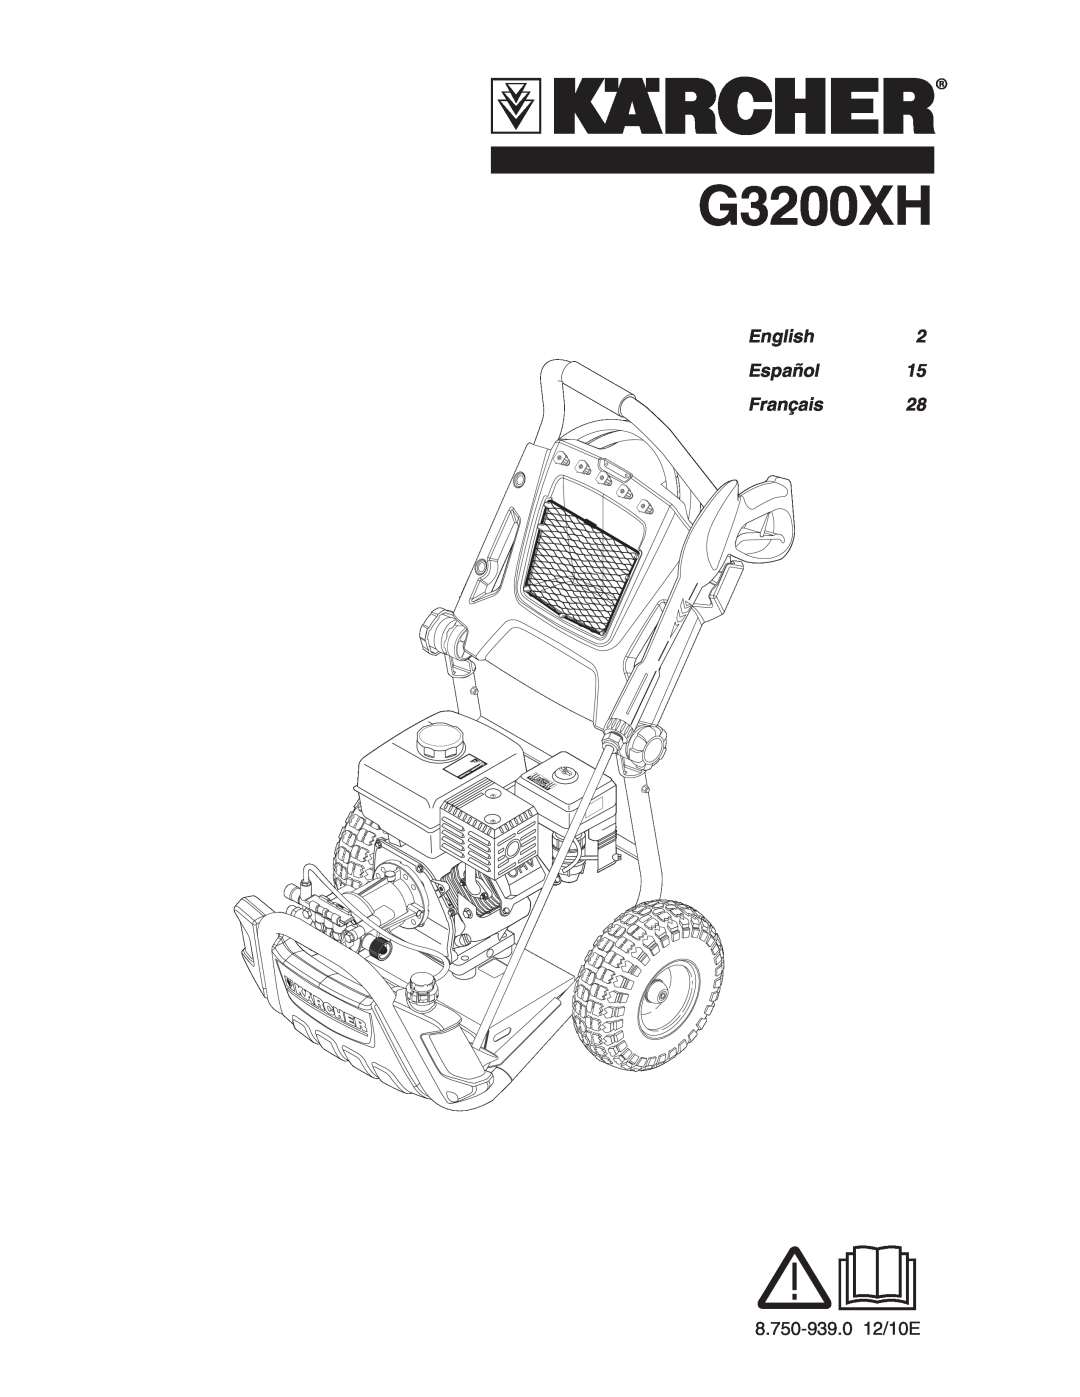 Karcher G3200XH manual English2 Español15 Français28 